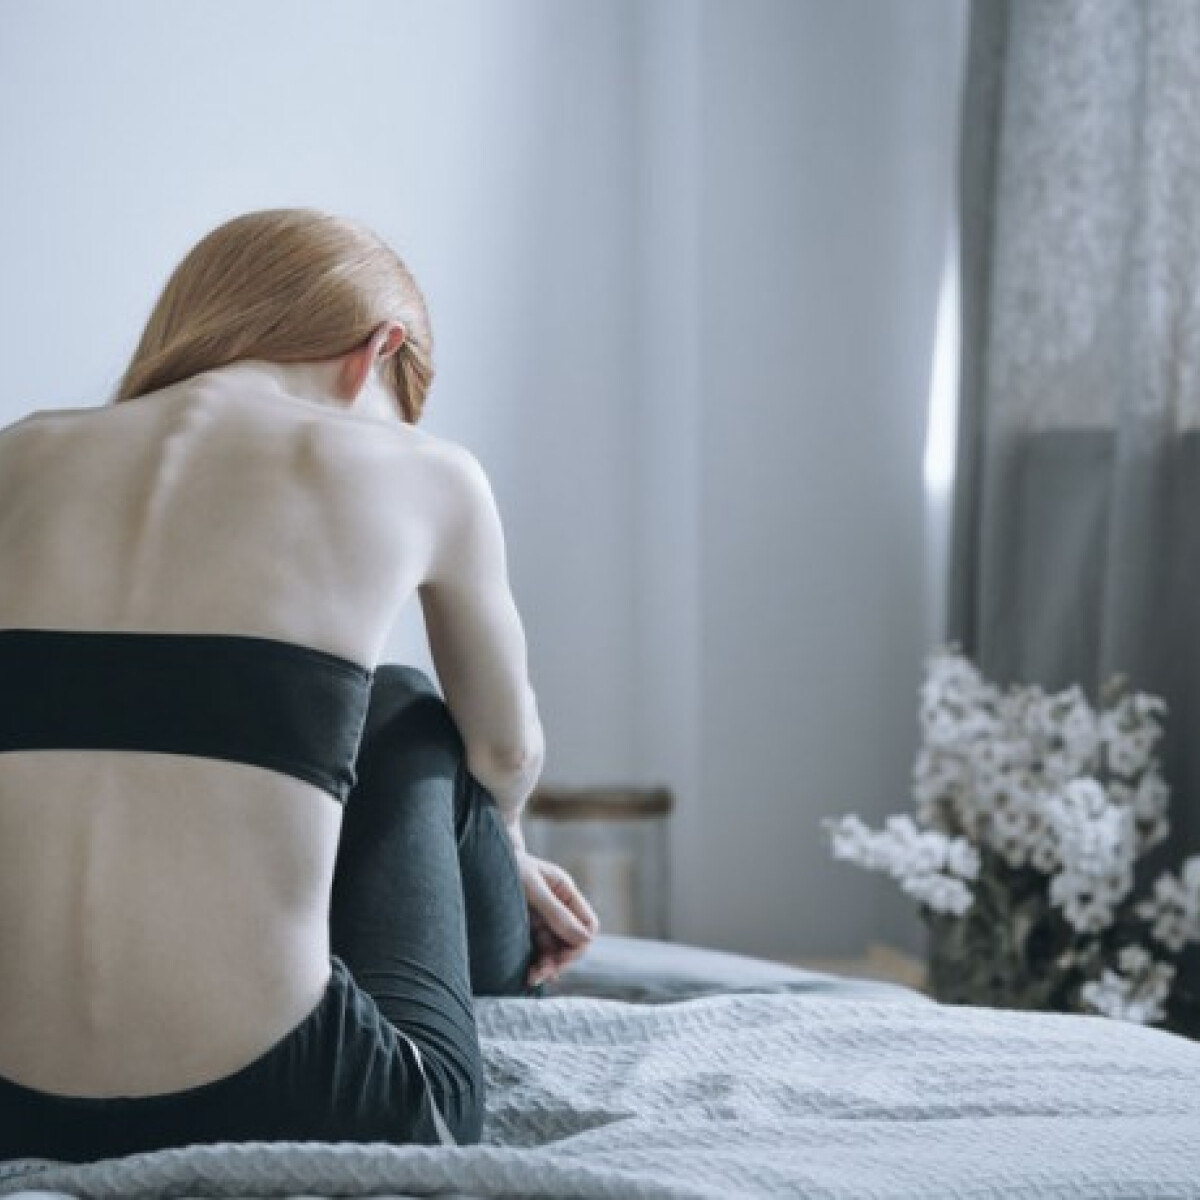 Élet anorexiával - árulkodó jelek. Mit tegyünk, ha gyanút fogtunk?